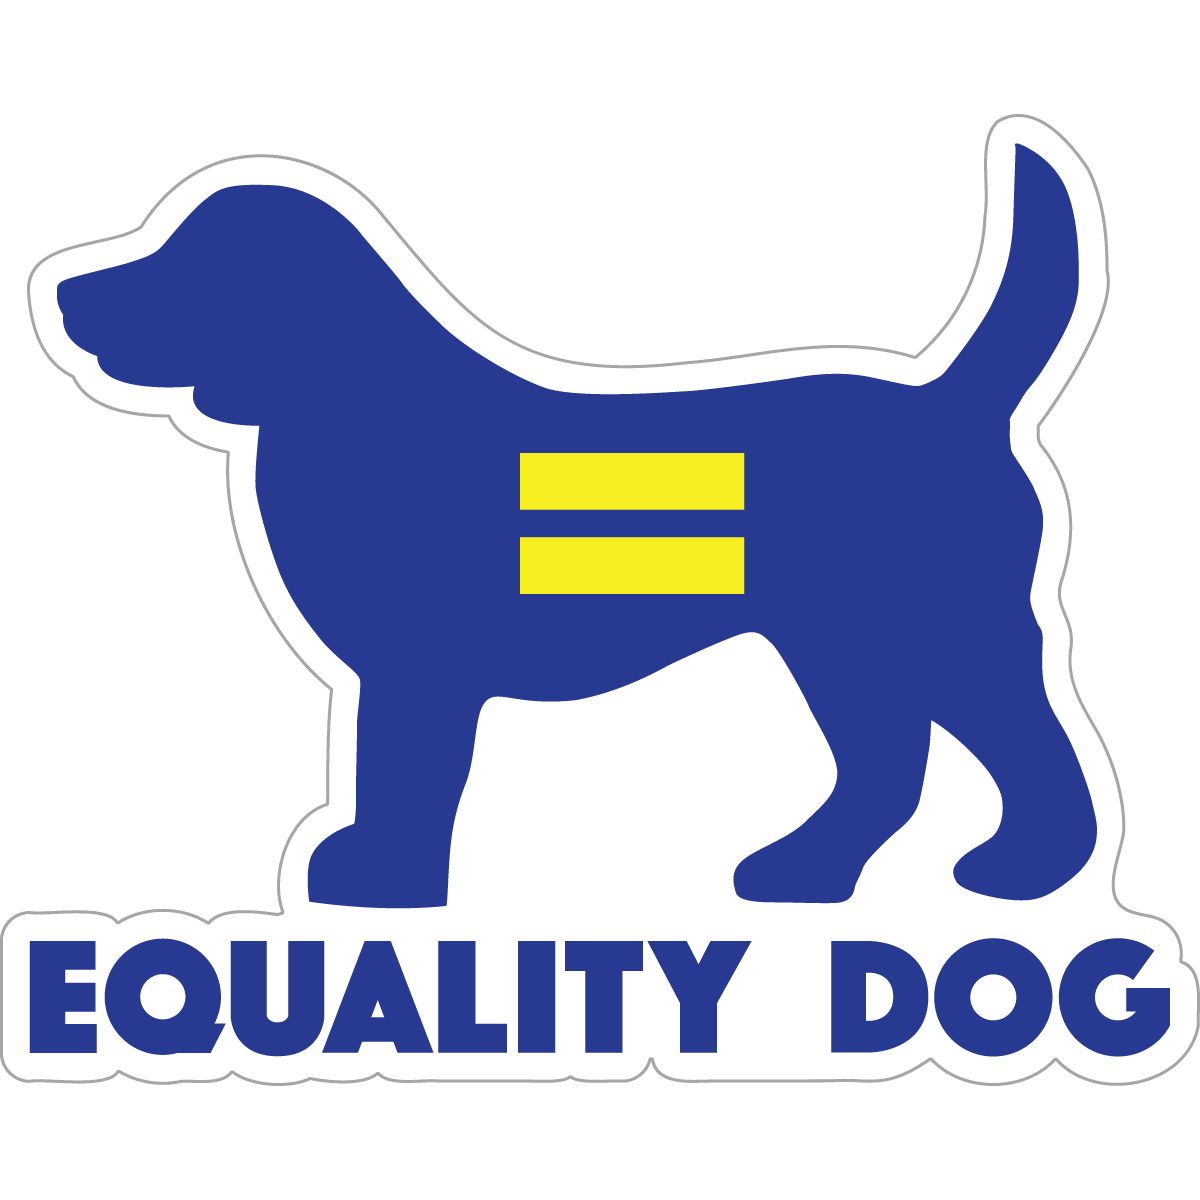 Equality Dog Decal